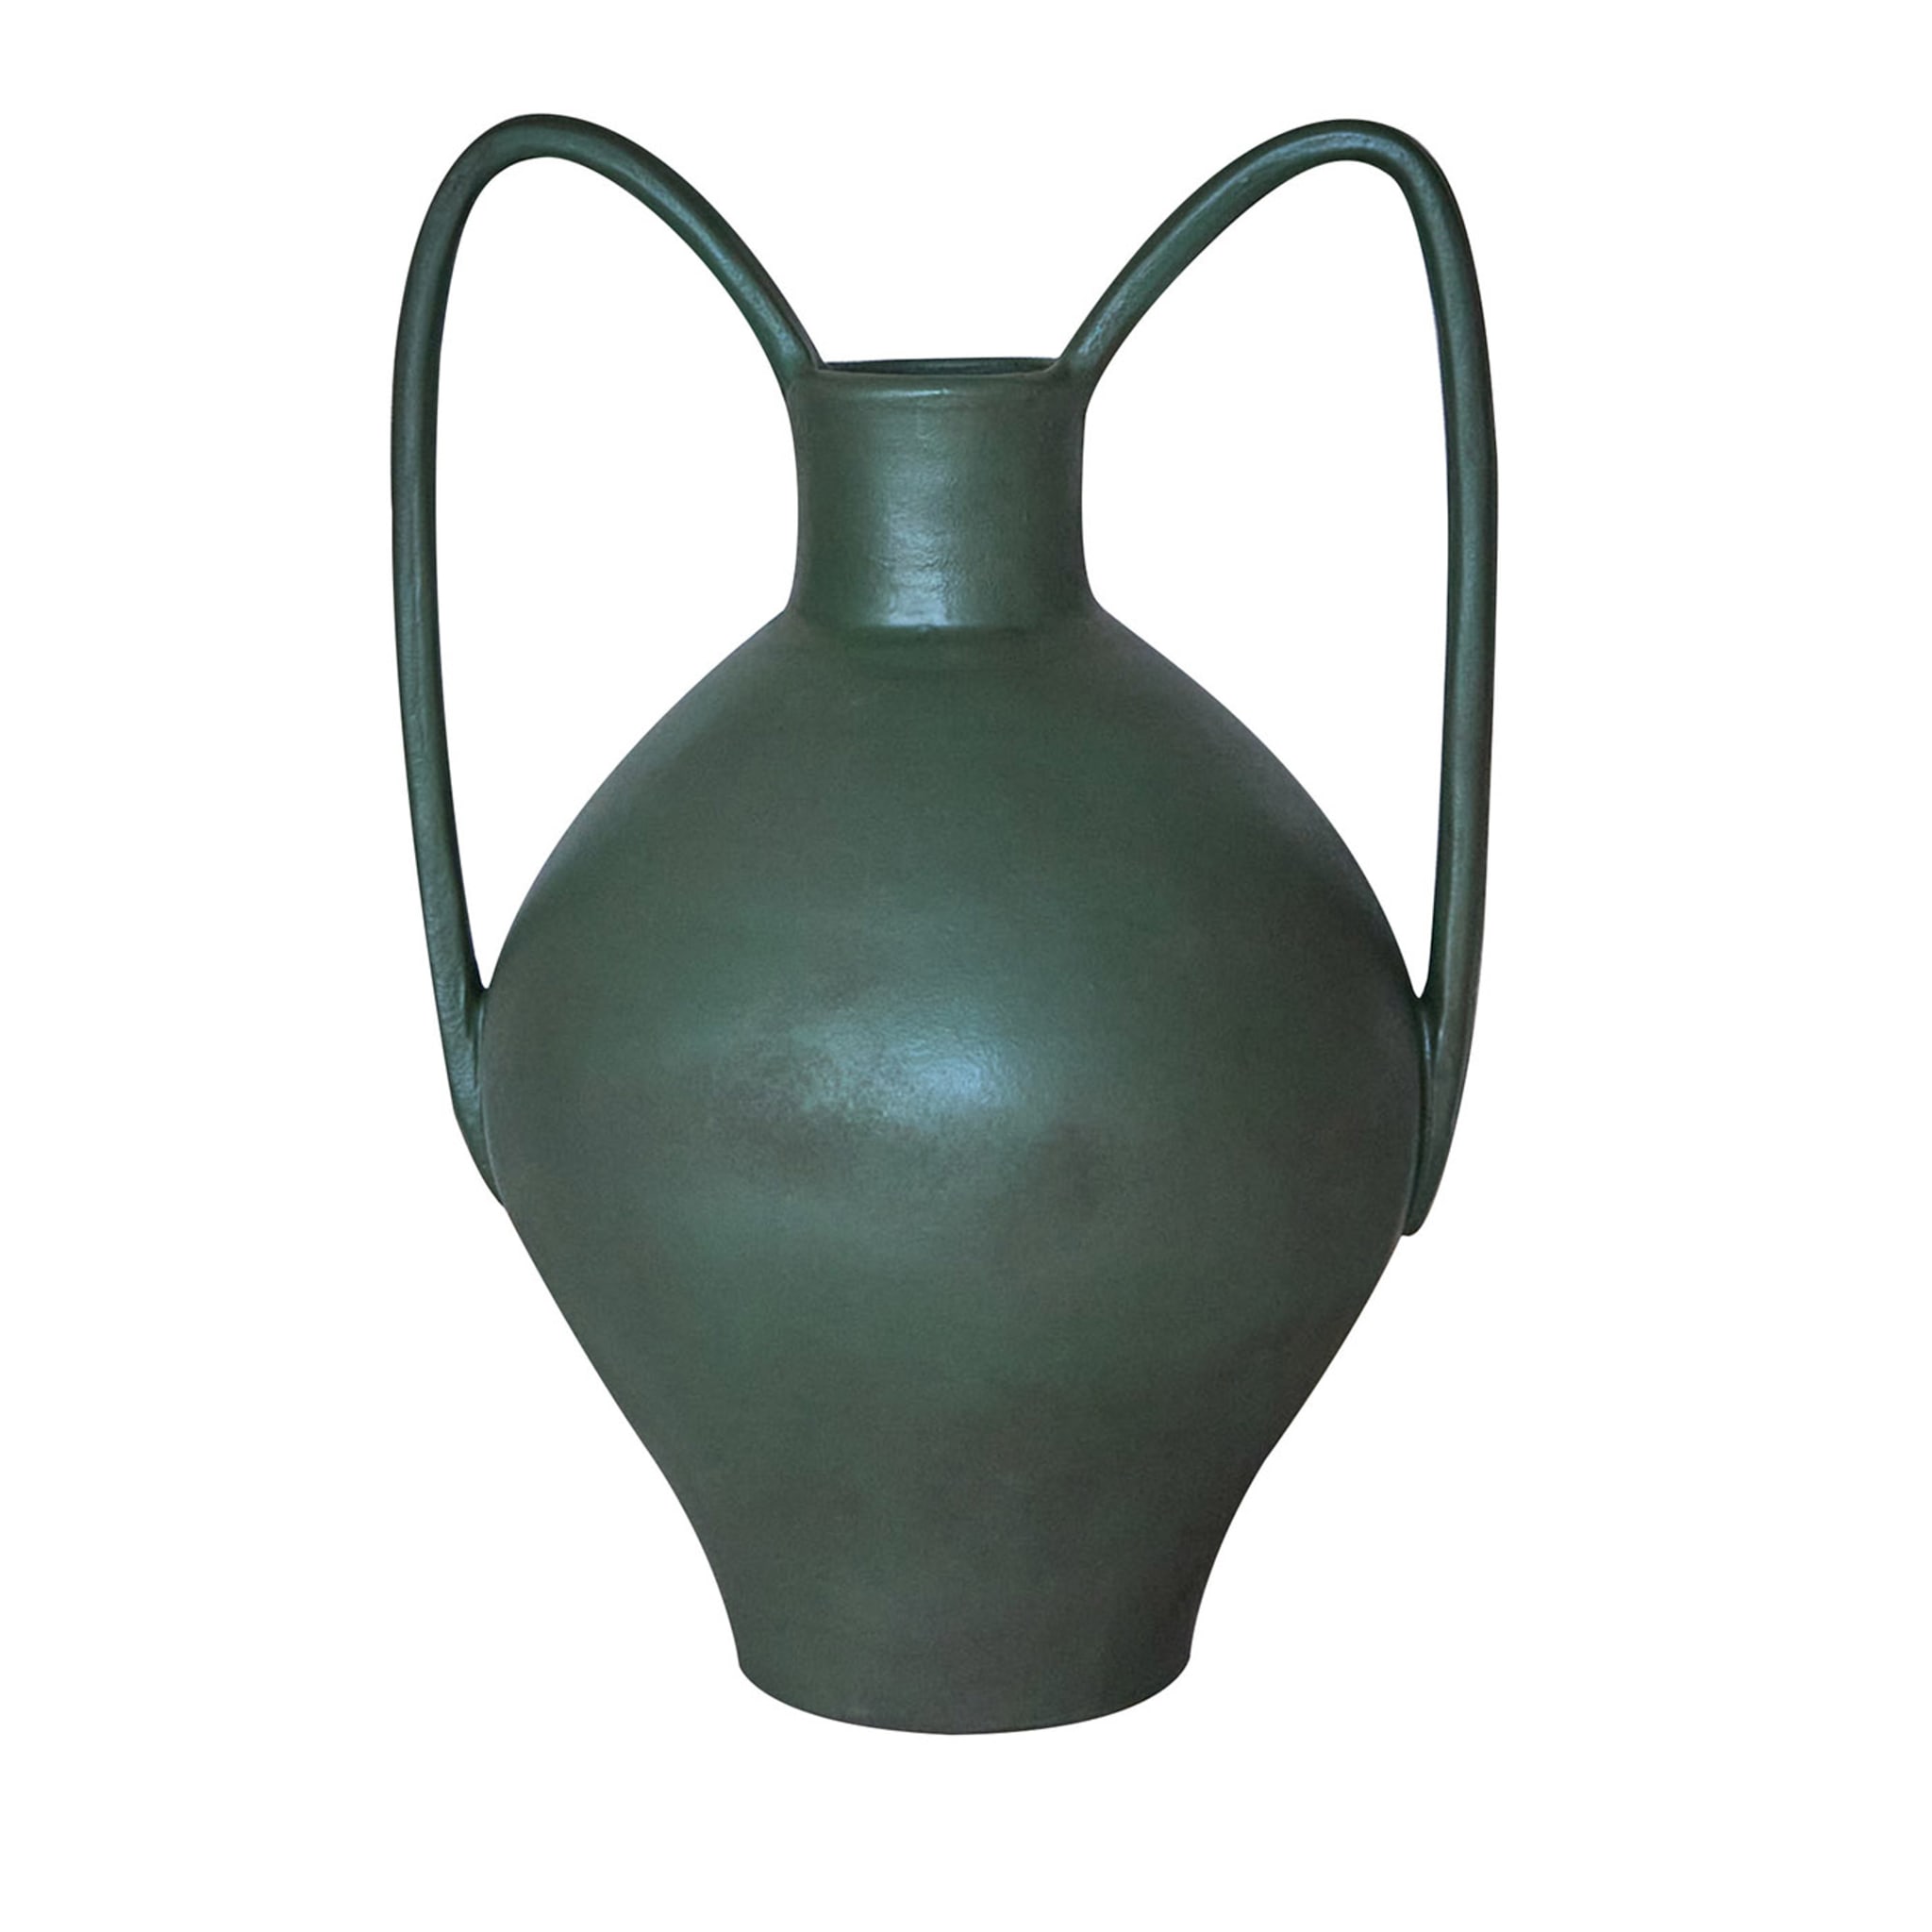 Anfora 2 Green Vase - Main view